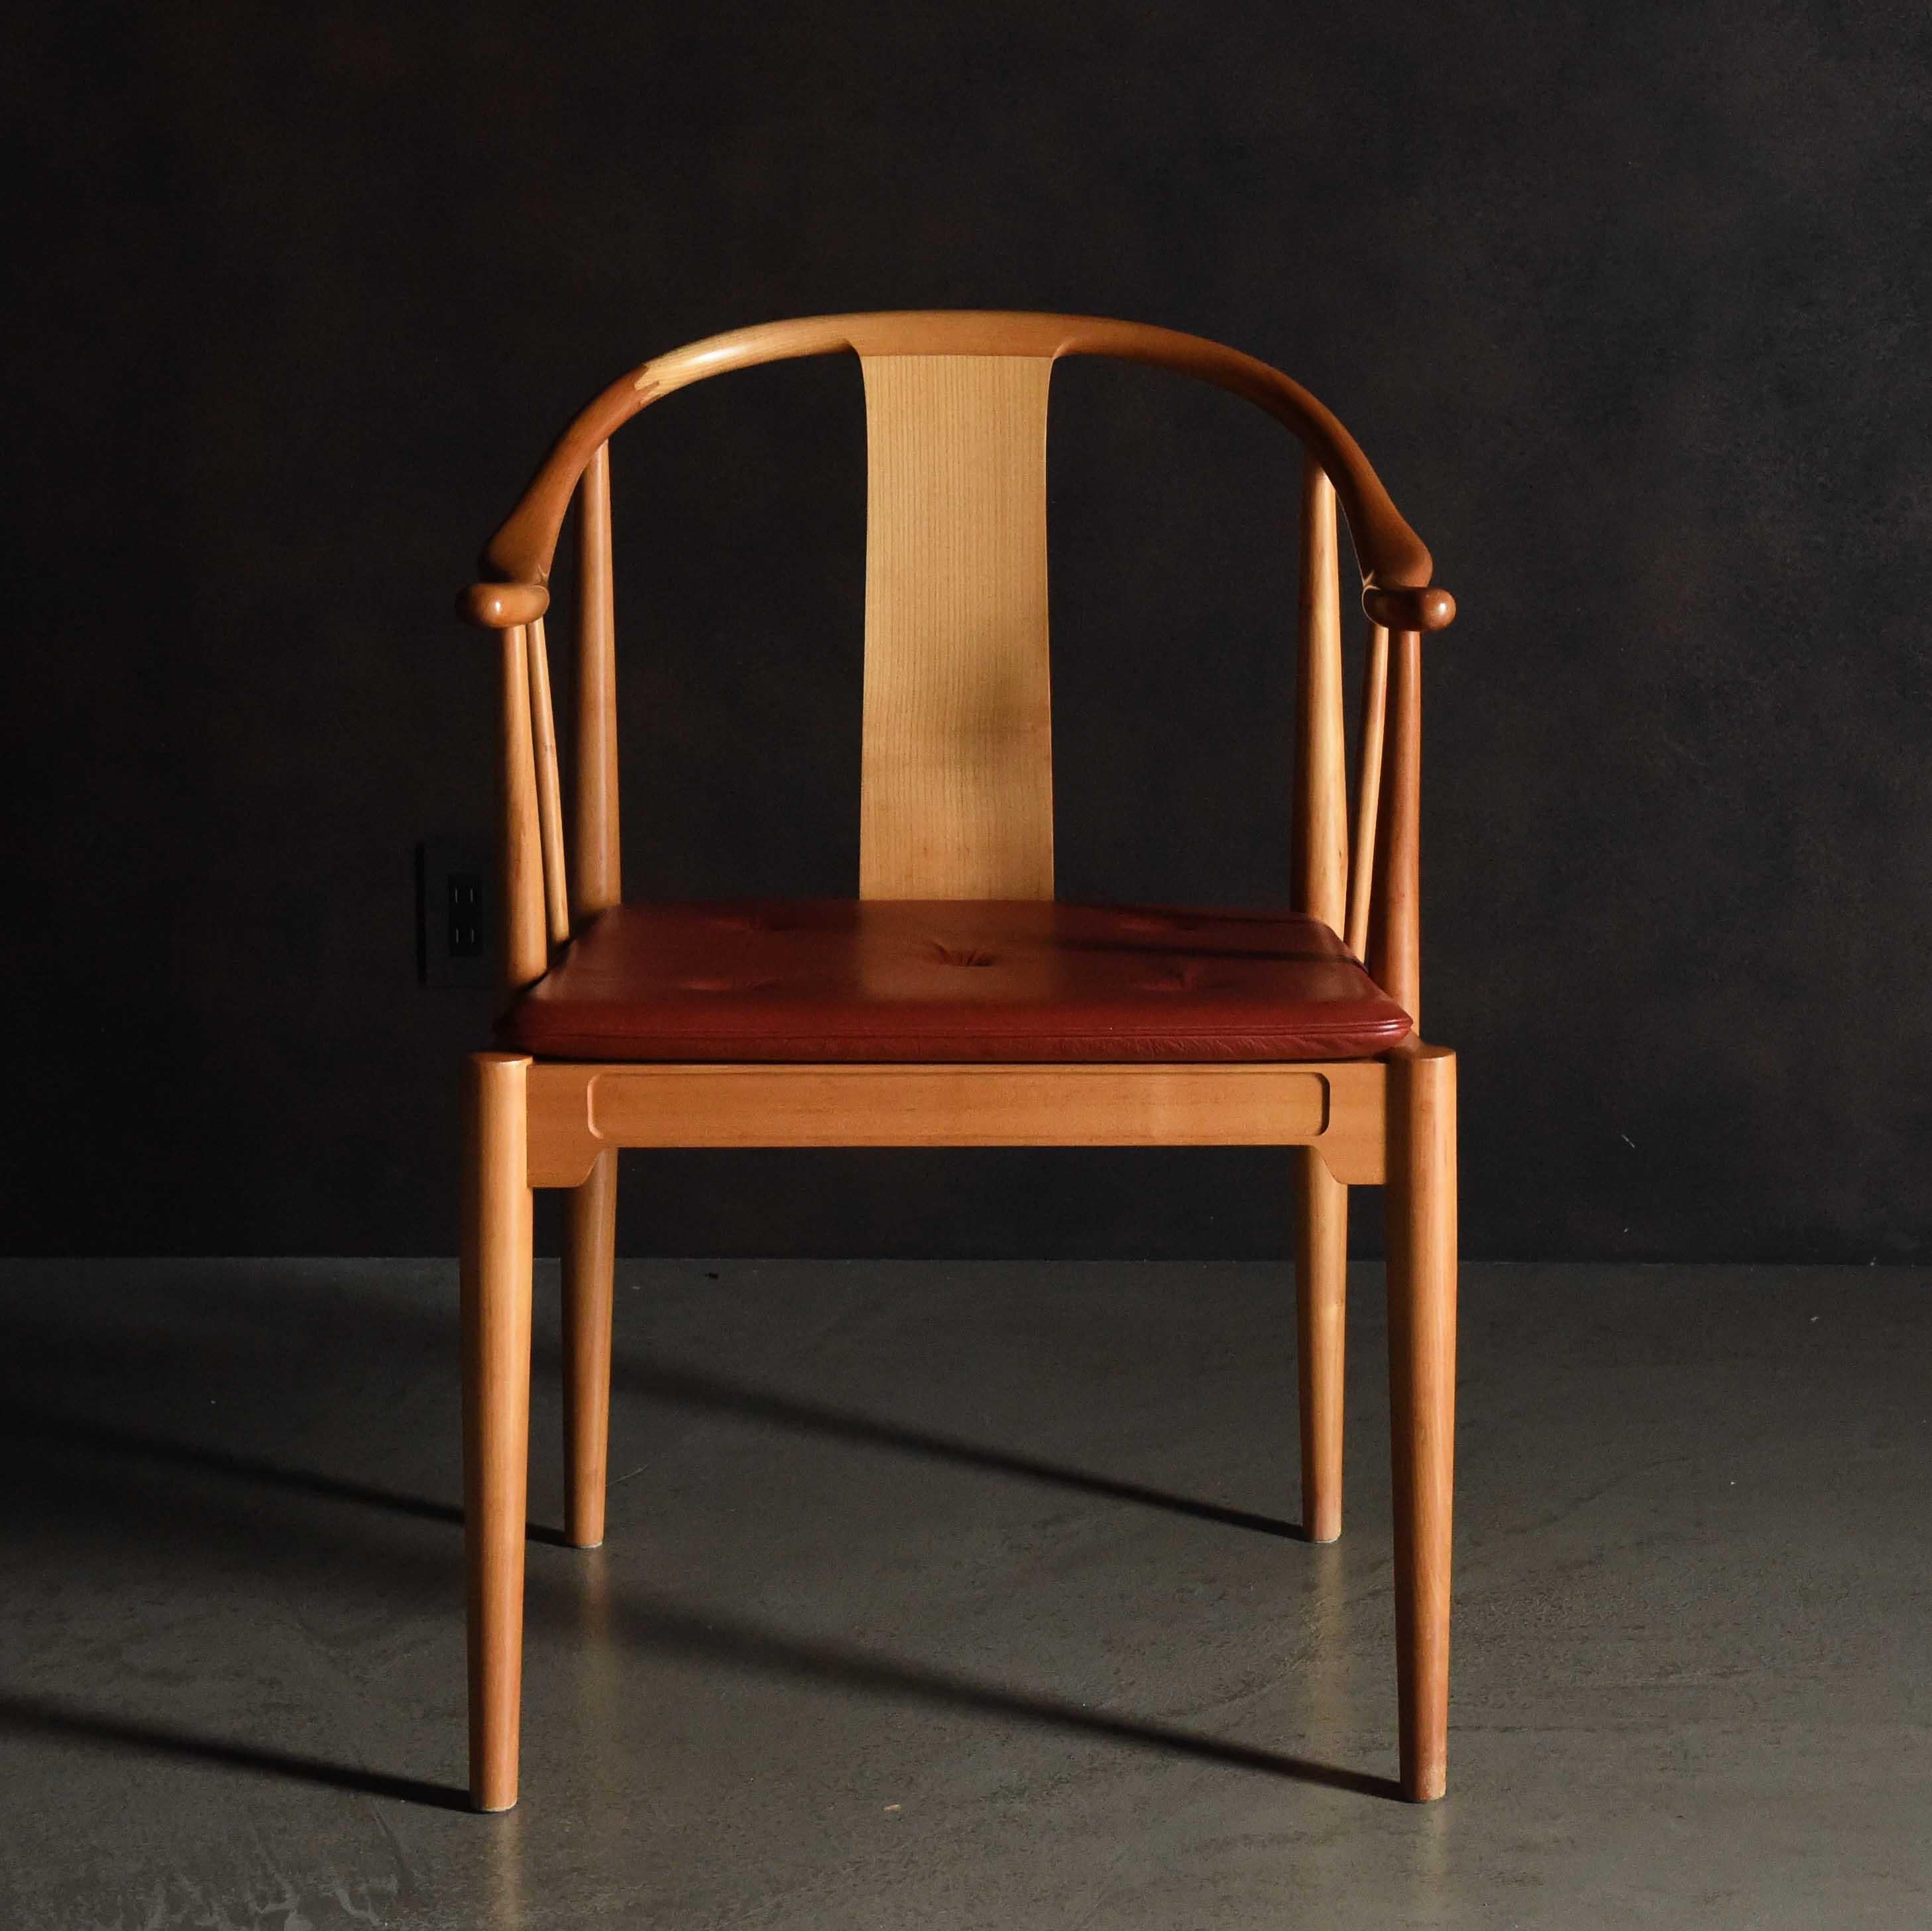 Der China Chair ist der einzige reine Holzstuhl in der Collection'S von Fritz Hansen. Er wurde durch das Design des 